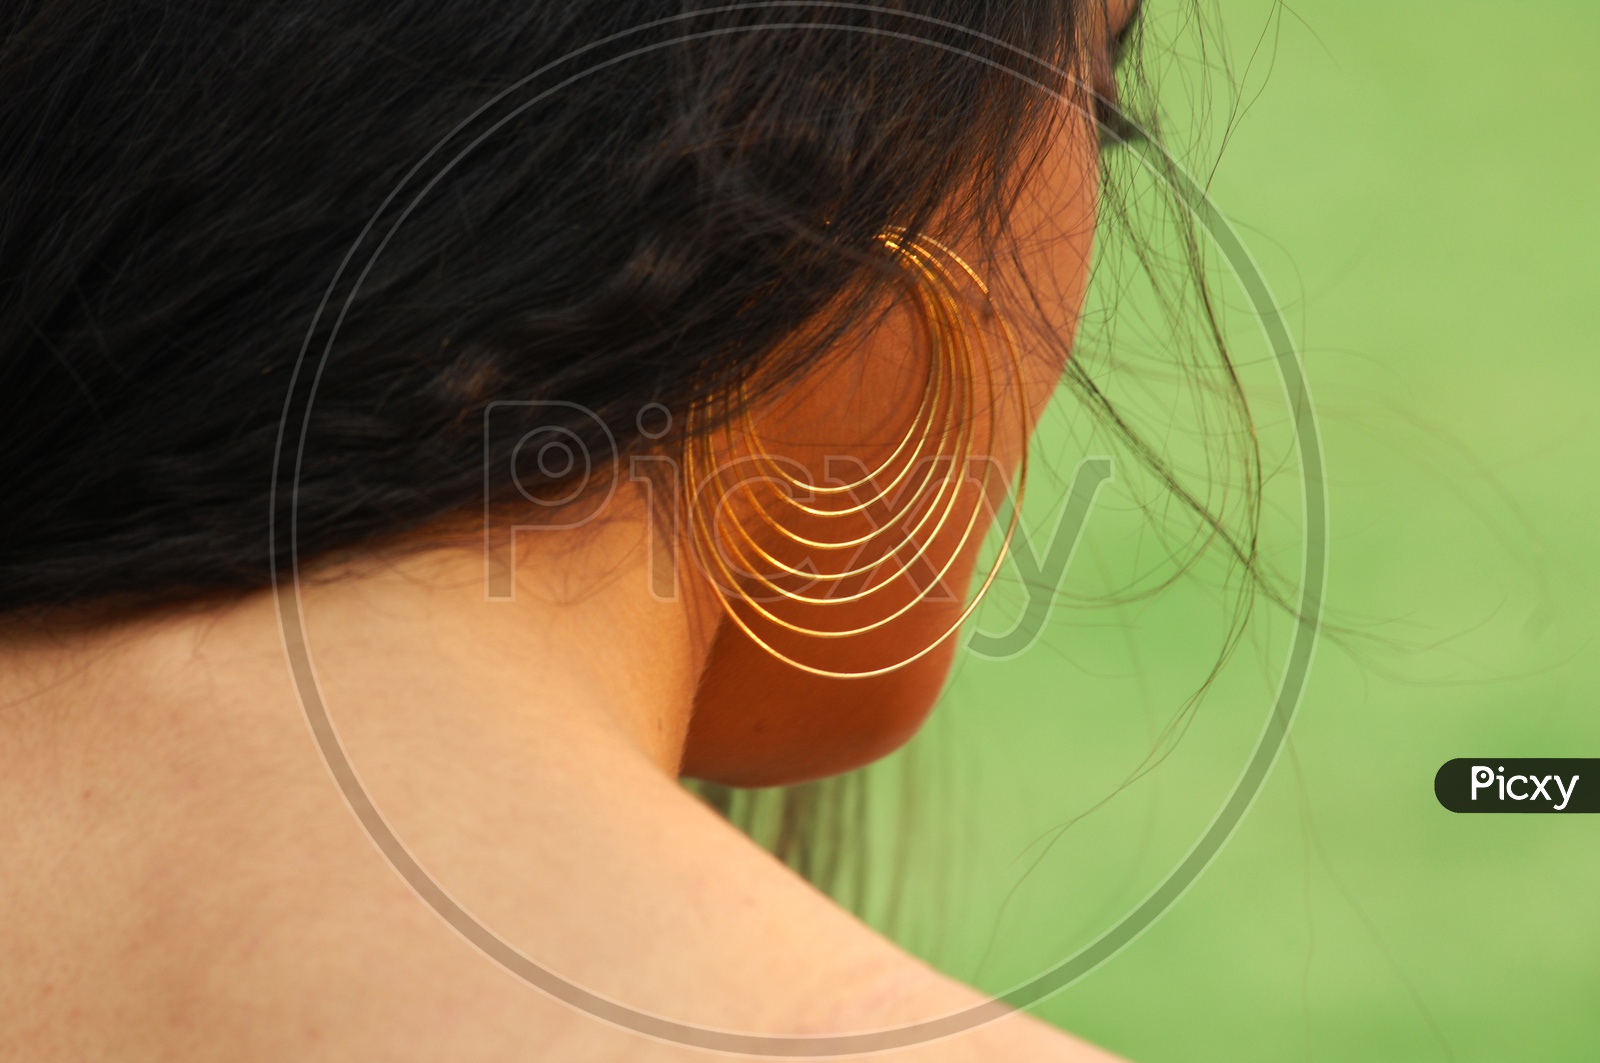 Indian woman wearing earrings